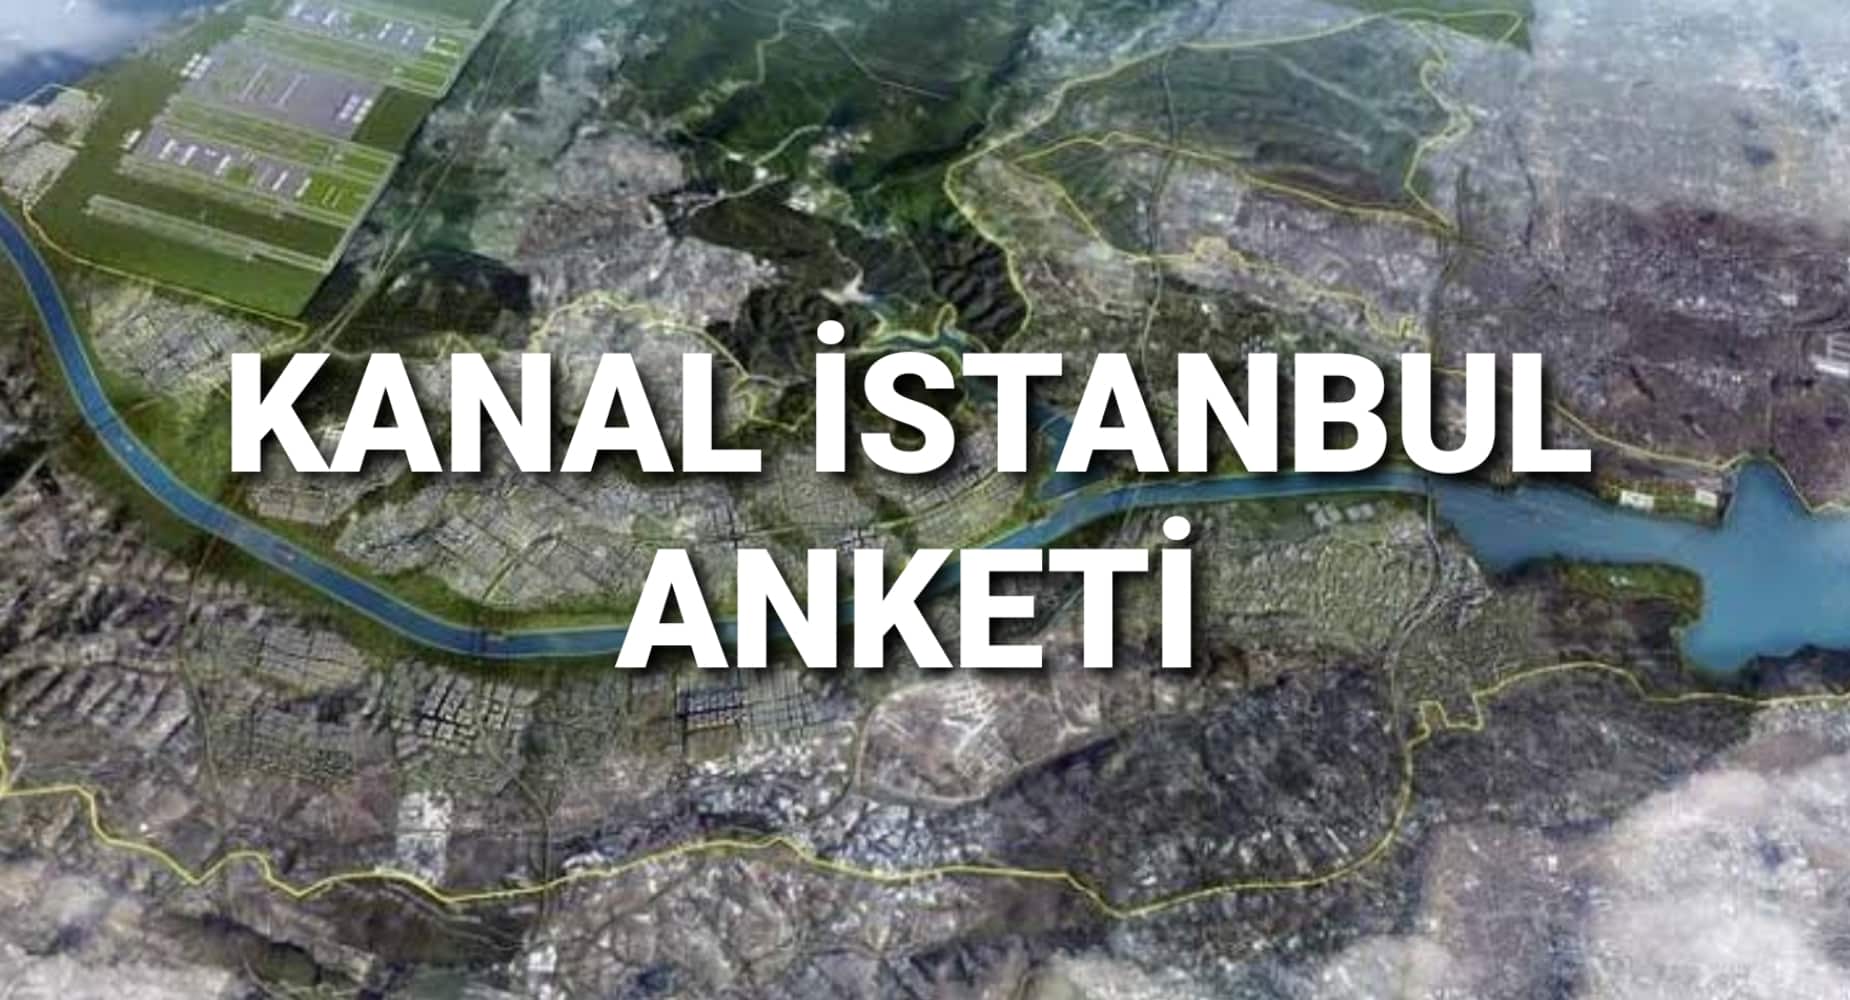 Kanal İstanbul anketi: Yüzde 72 Hayır dedi!